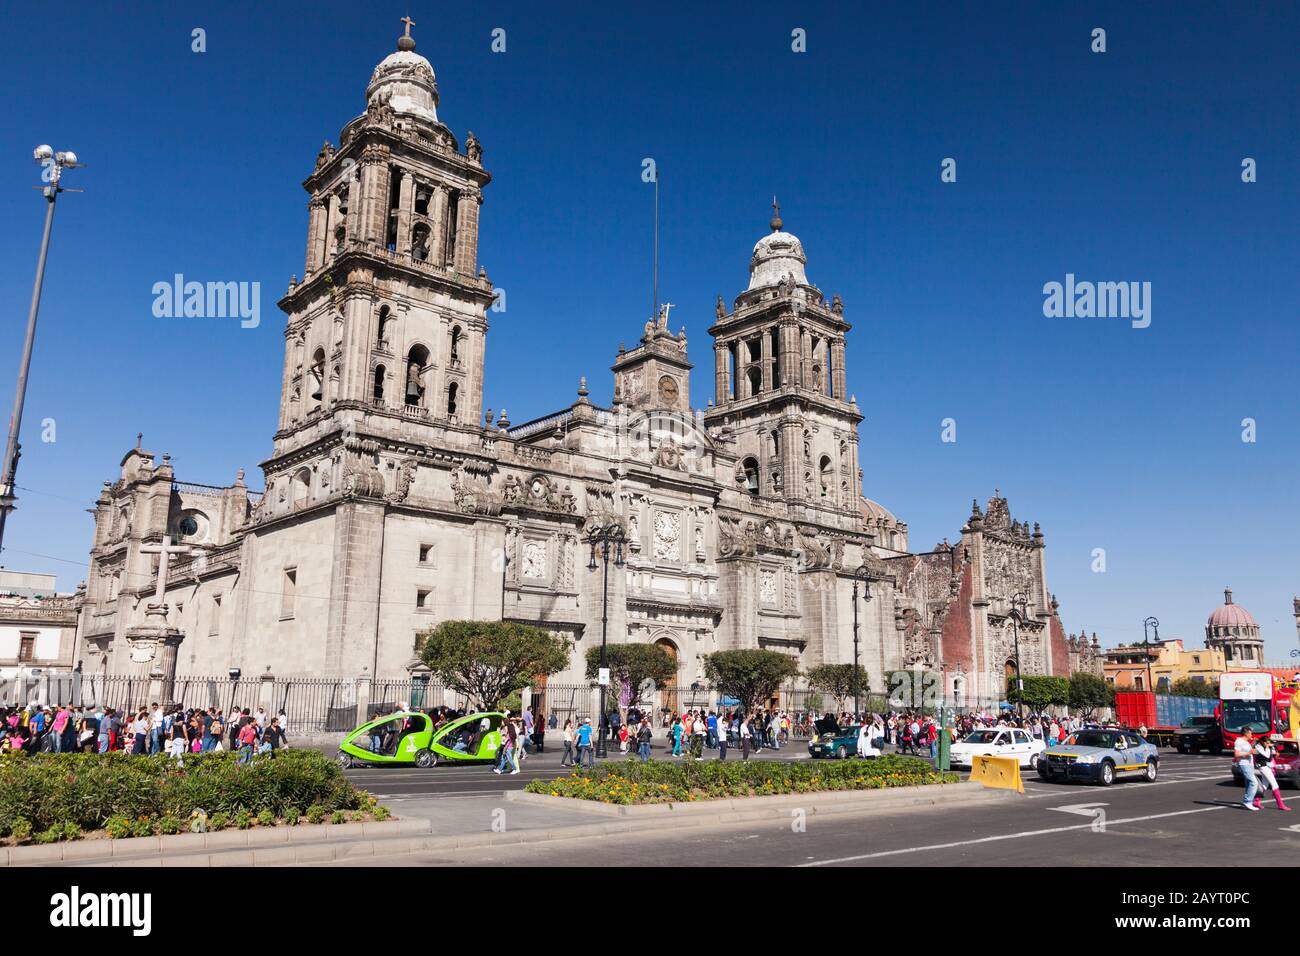 Mexico City Metropolitan Cathedral, Zocalo, Plaza de la Constitucion, Mexico City, Mexico, Central America Stock Photo